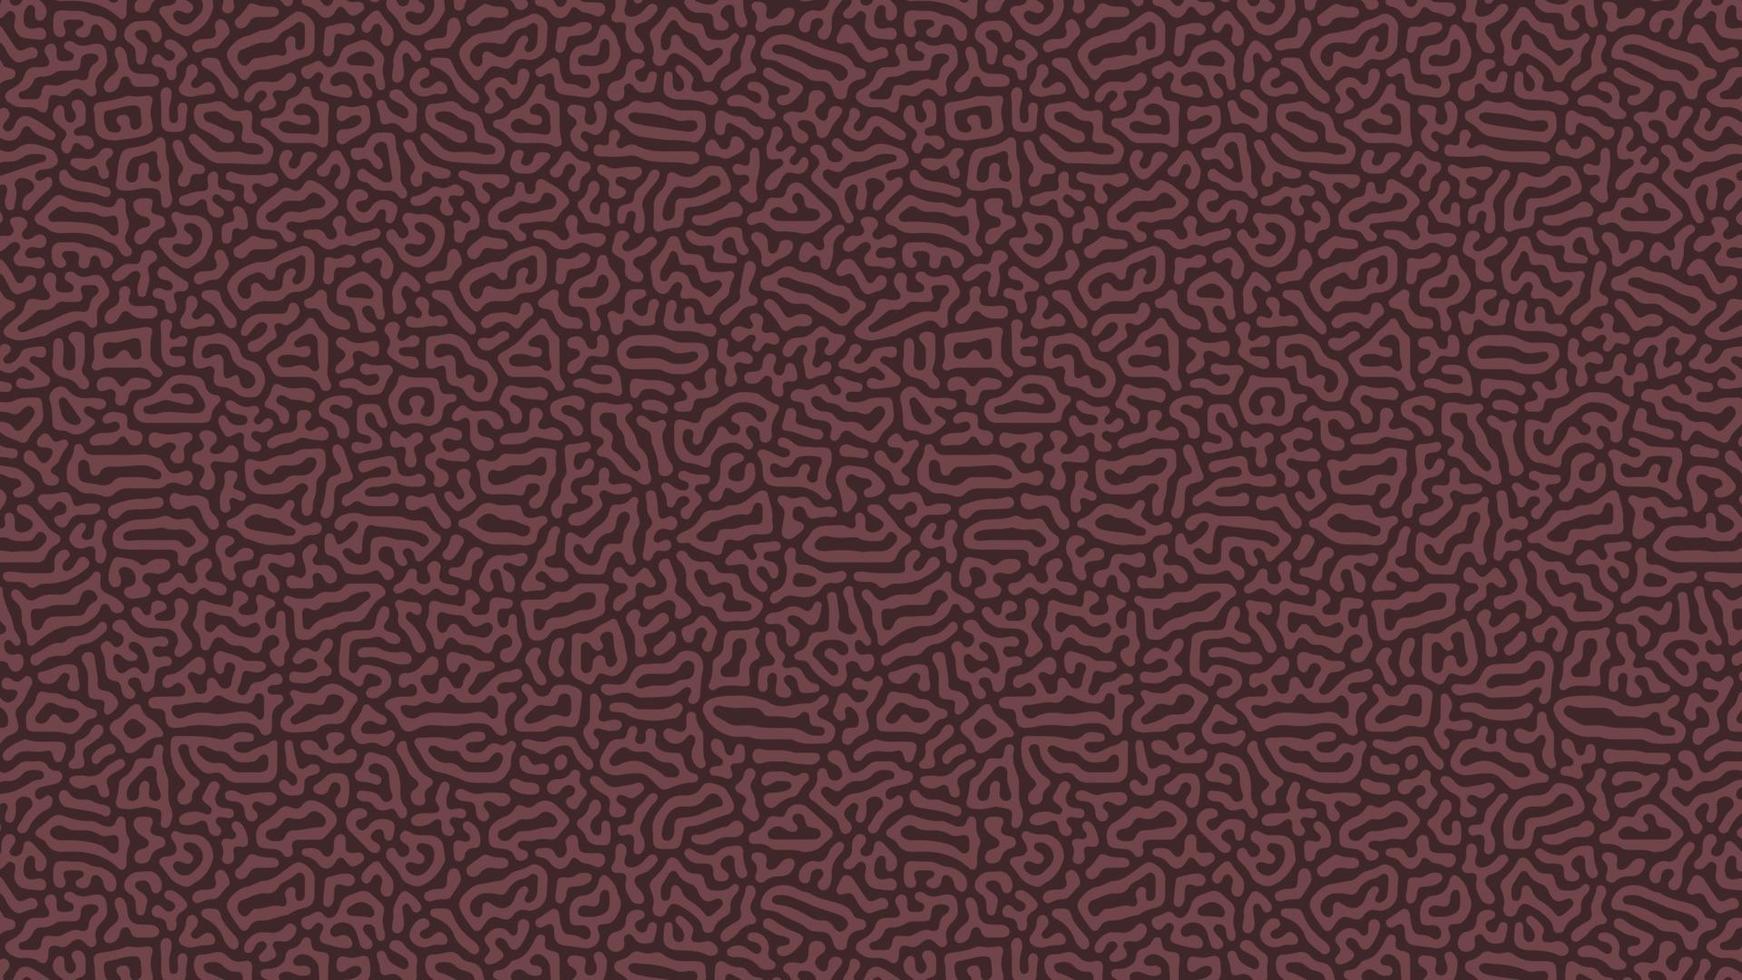 abstracte turing organische wallpaper achtergrond vector